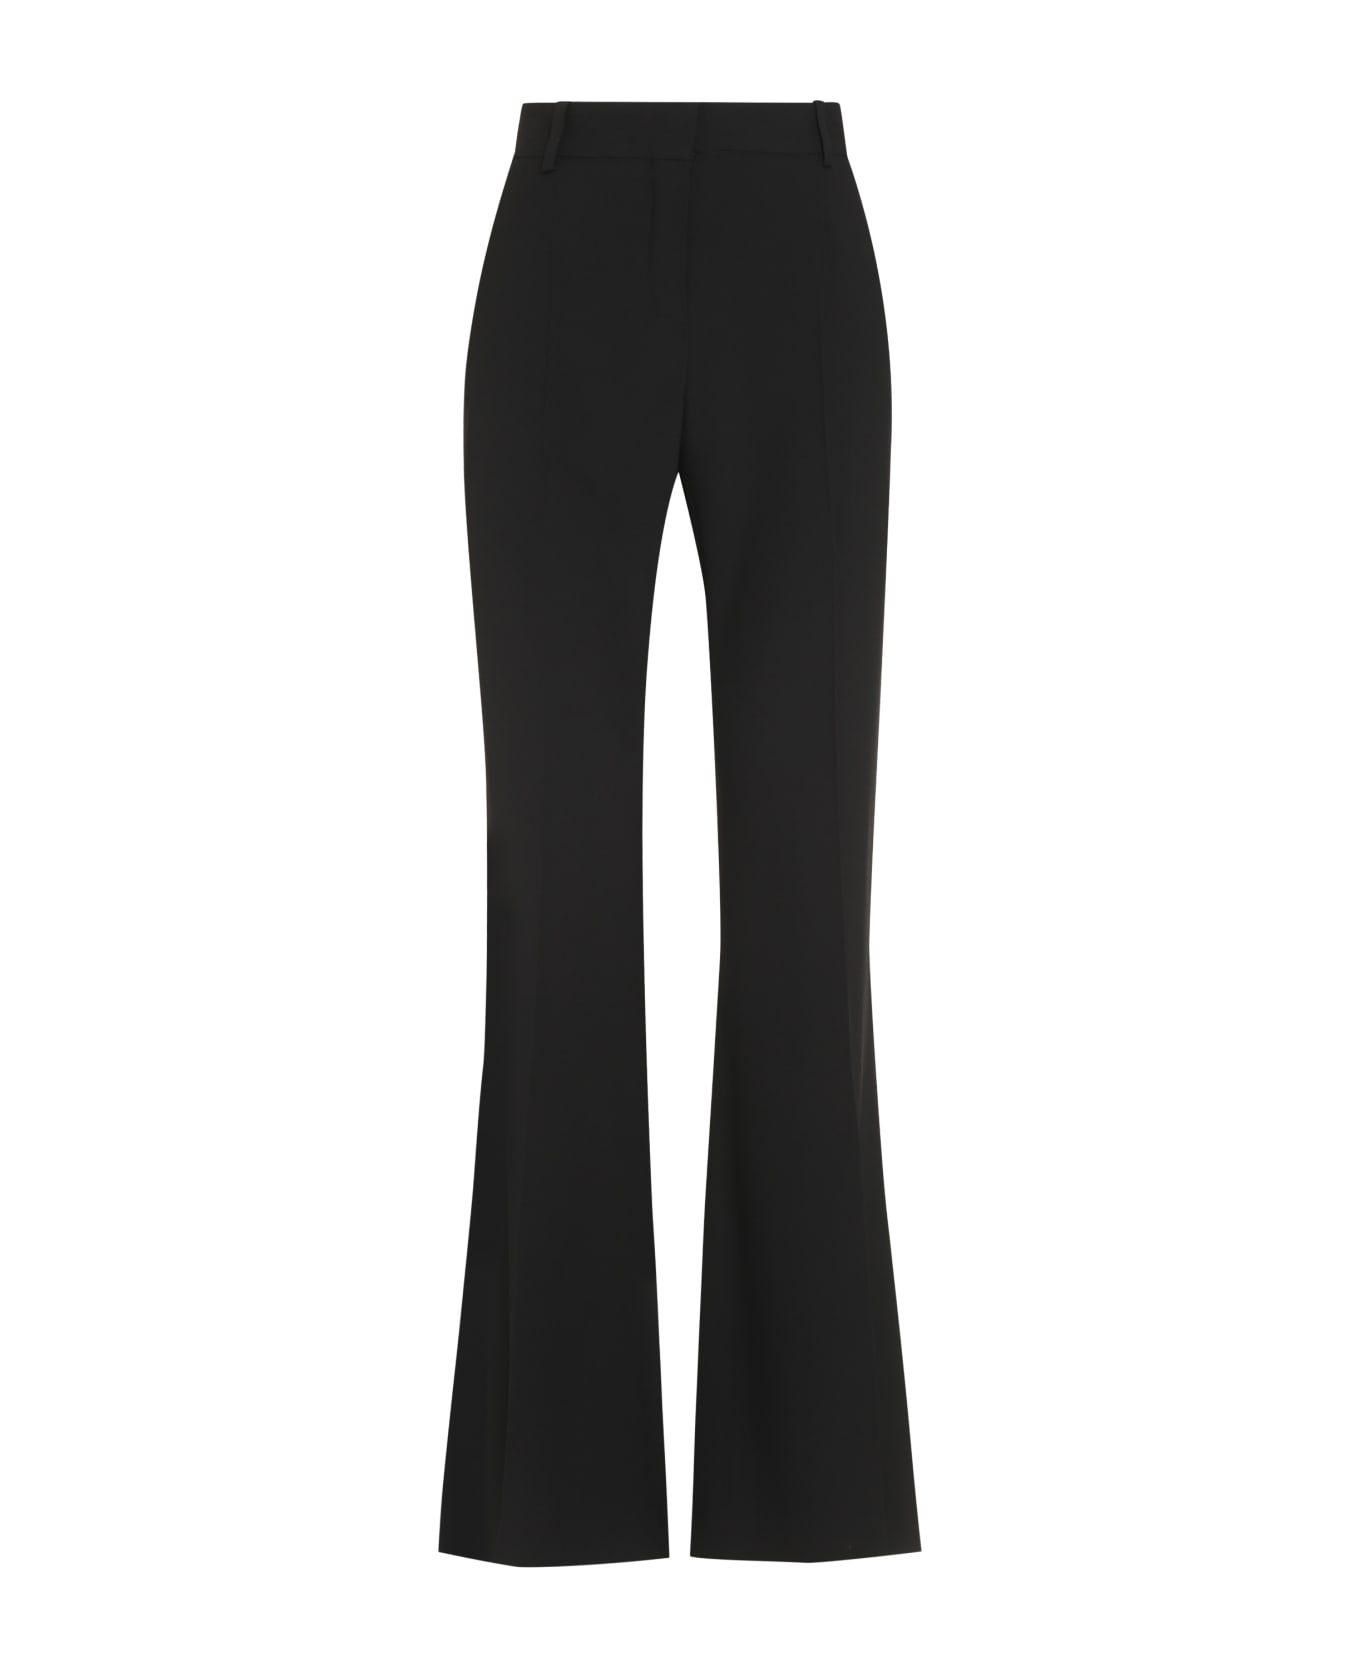 Nina Ricci Flared Trousers - black ボトムス